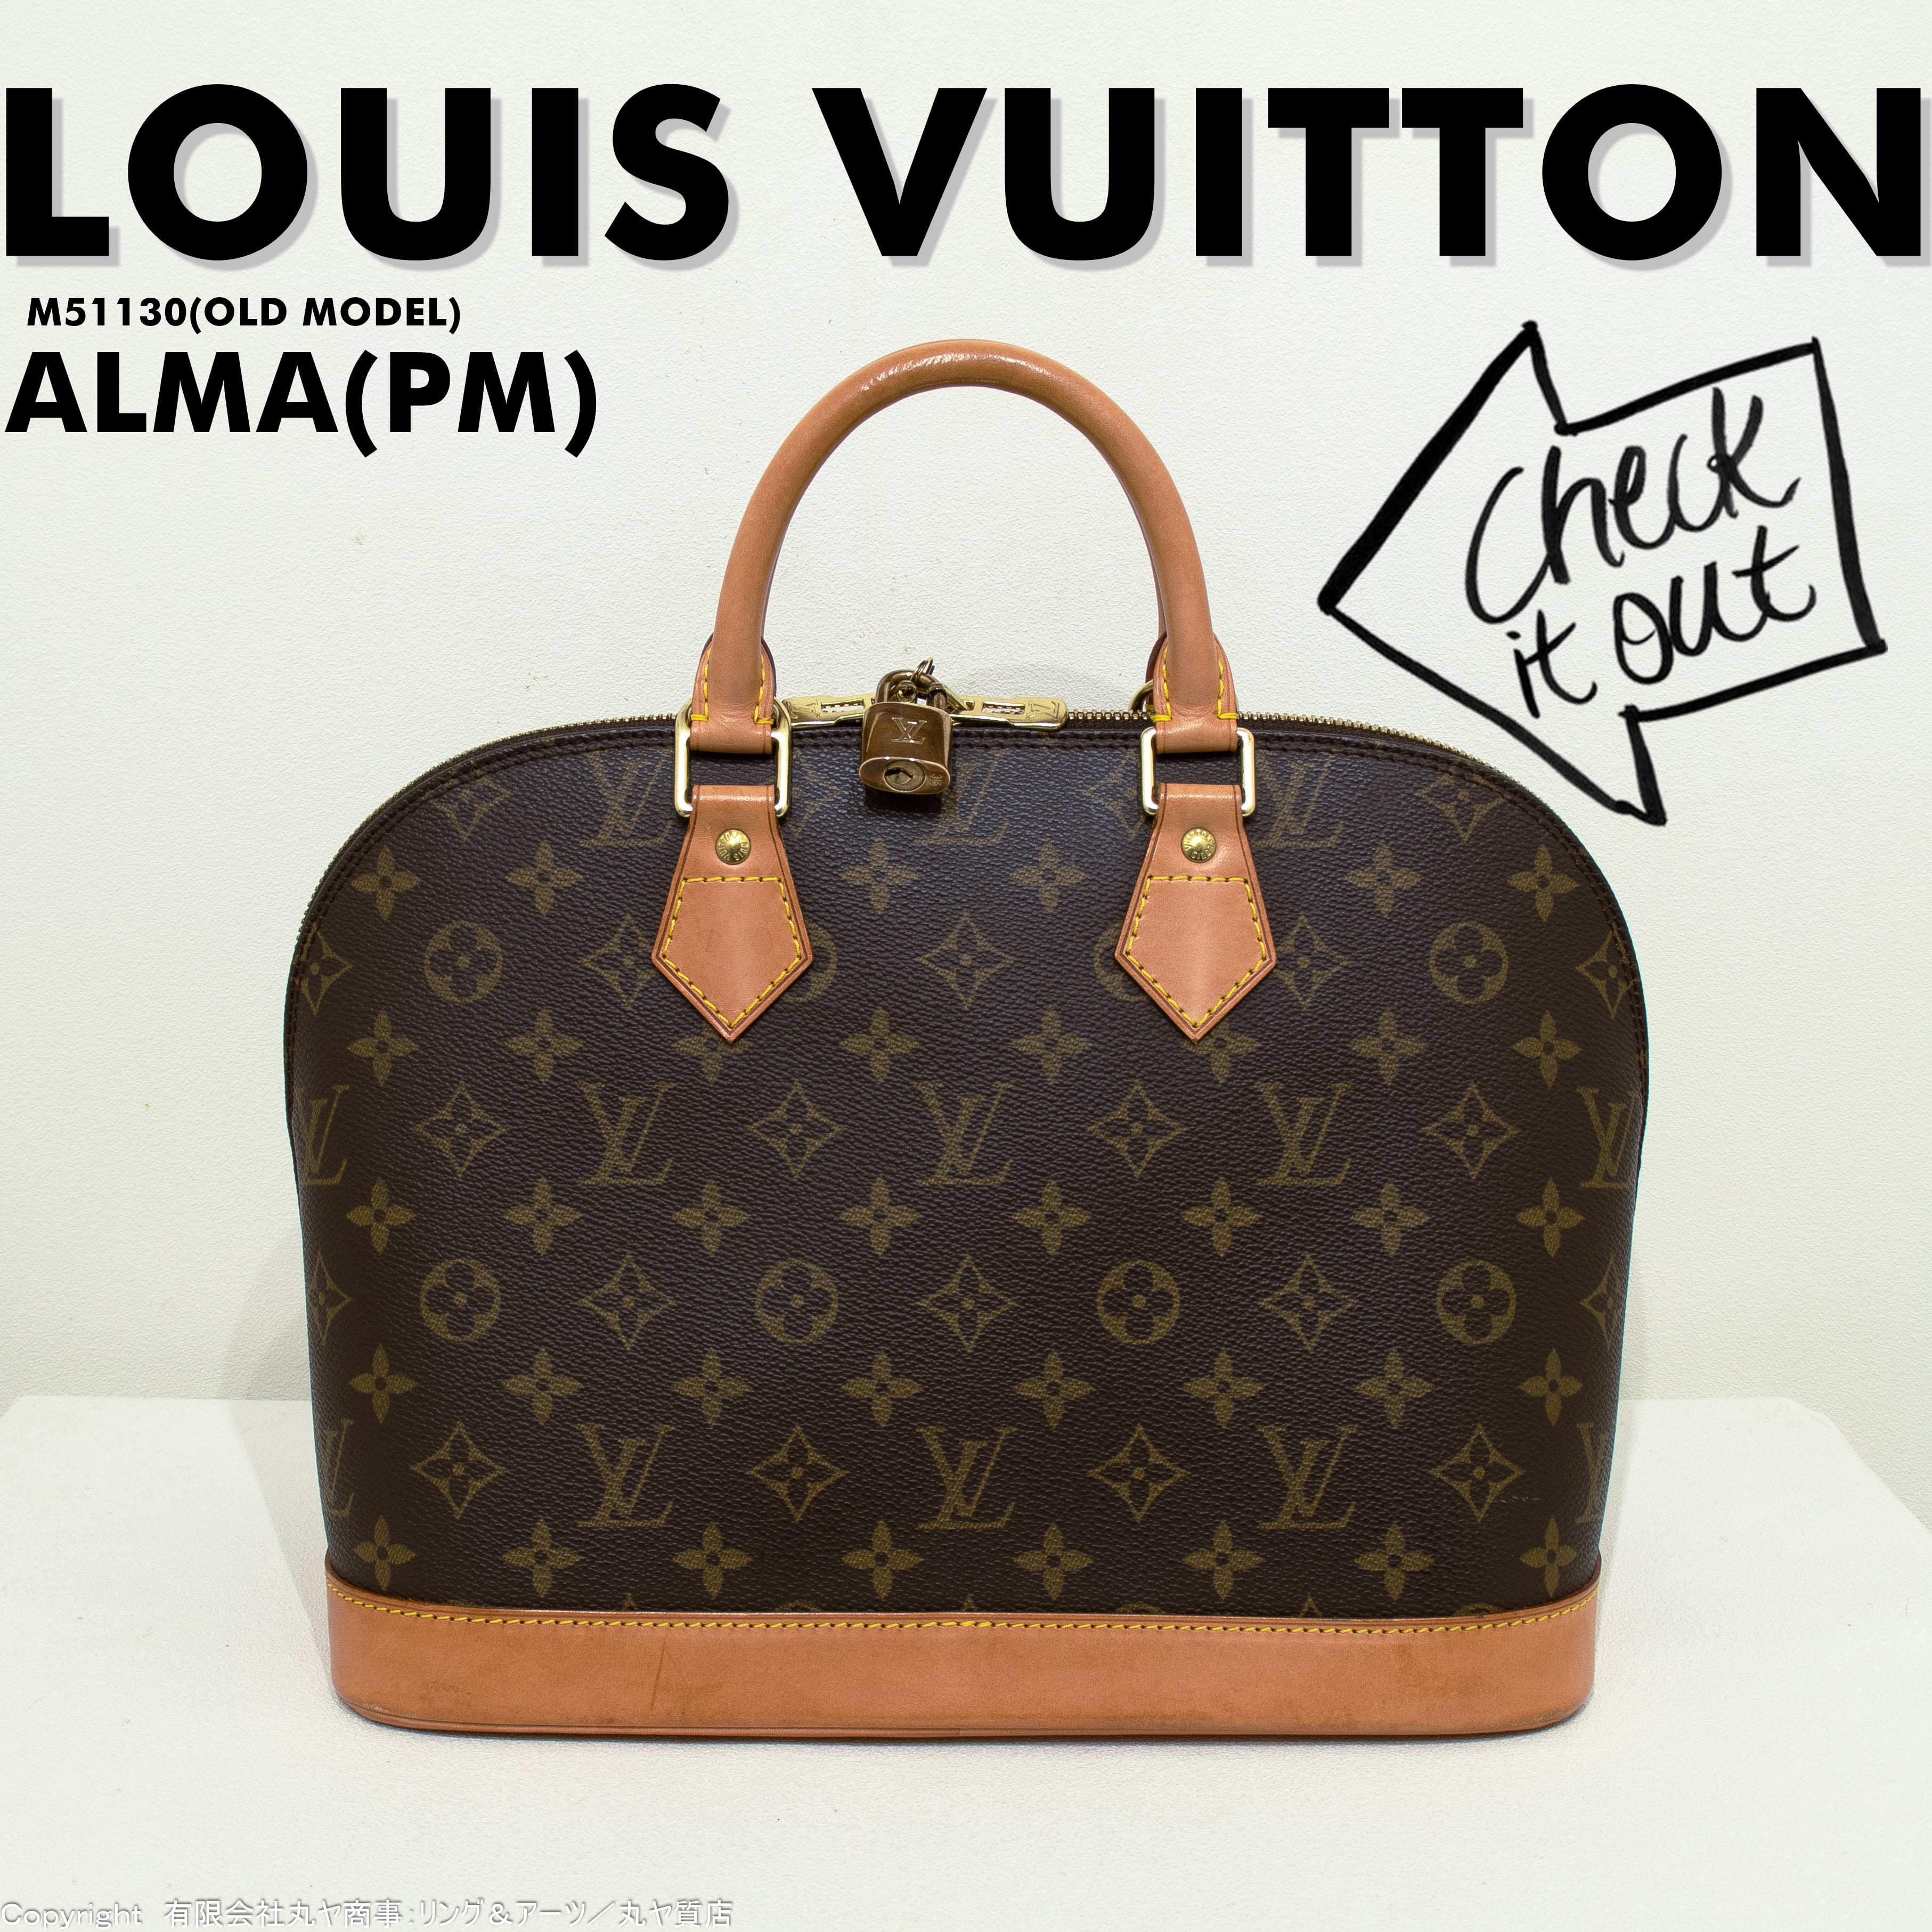 Louis Vuitton ヴィトン モノグラム アルマPM M51130